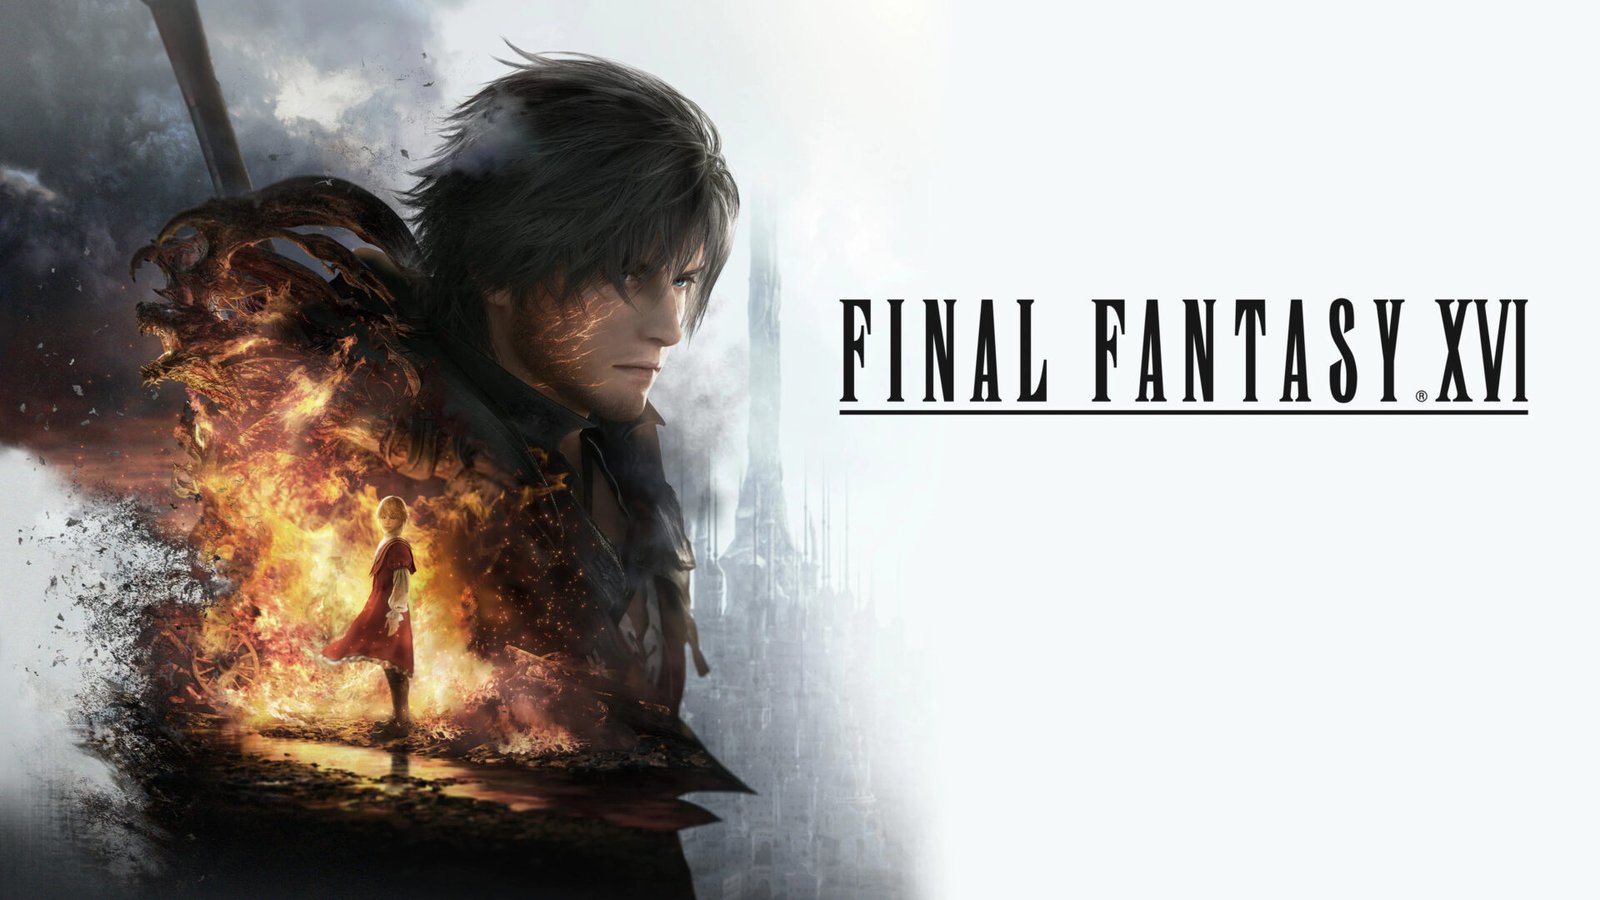 Preordina Final Fantasy XVI in esclusiva per PlayStation 5